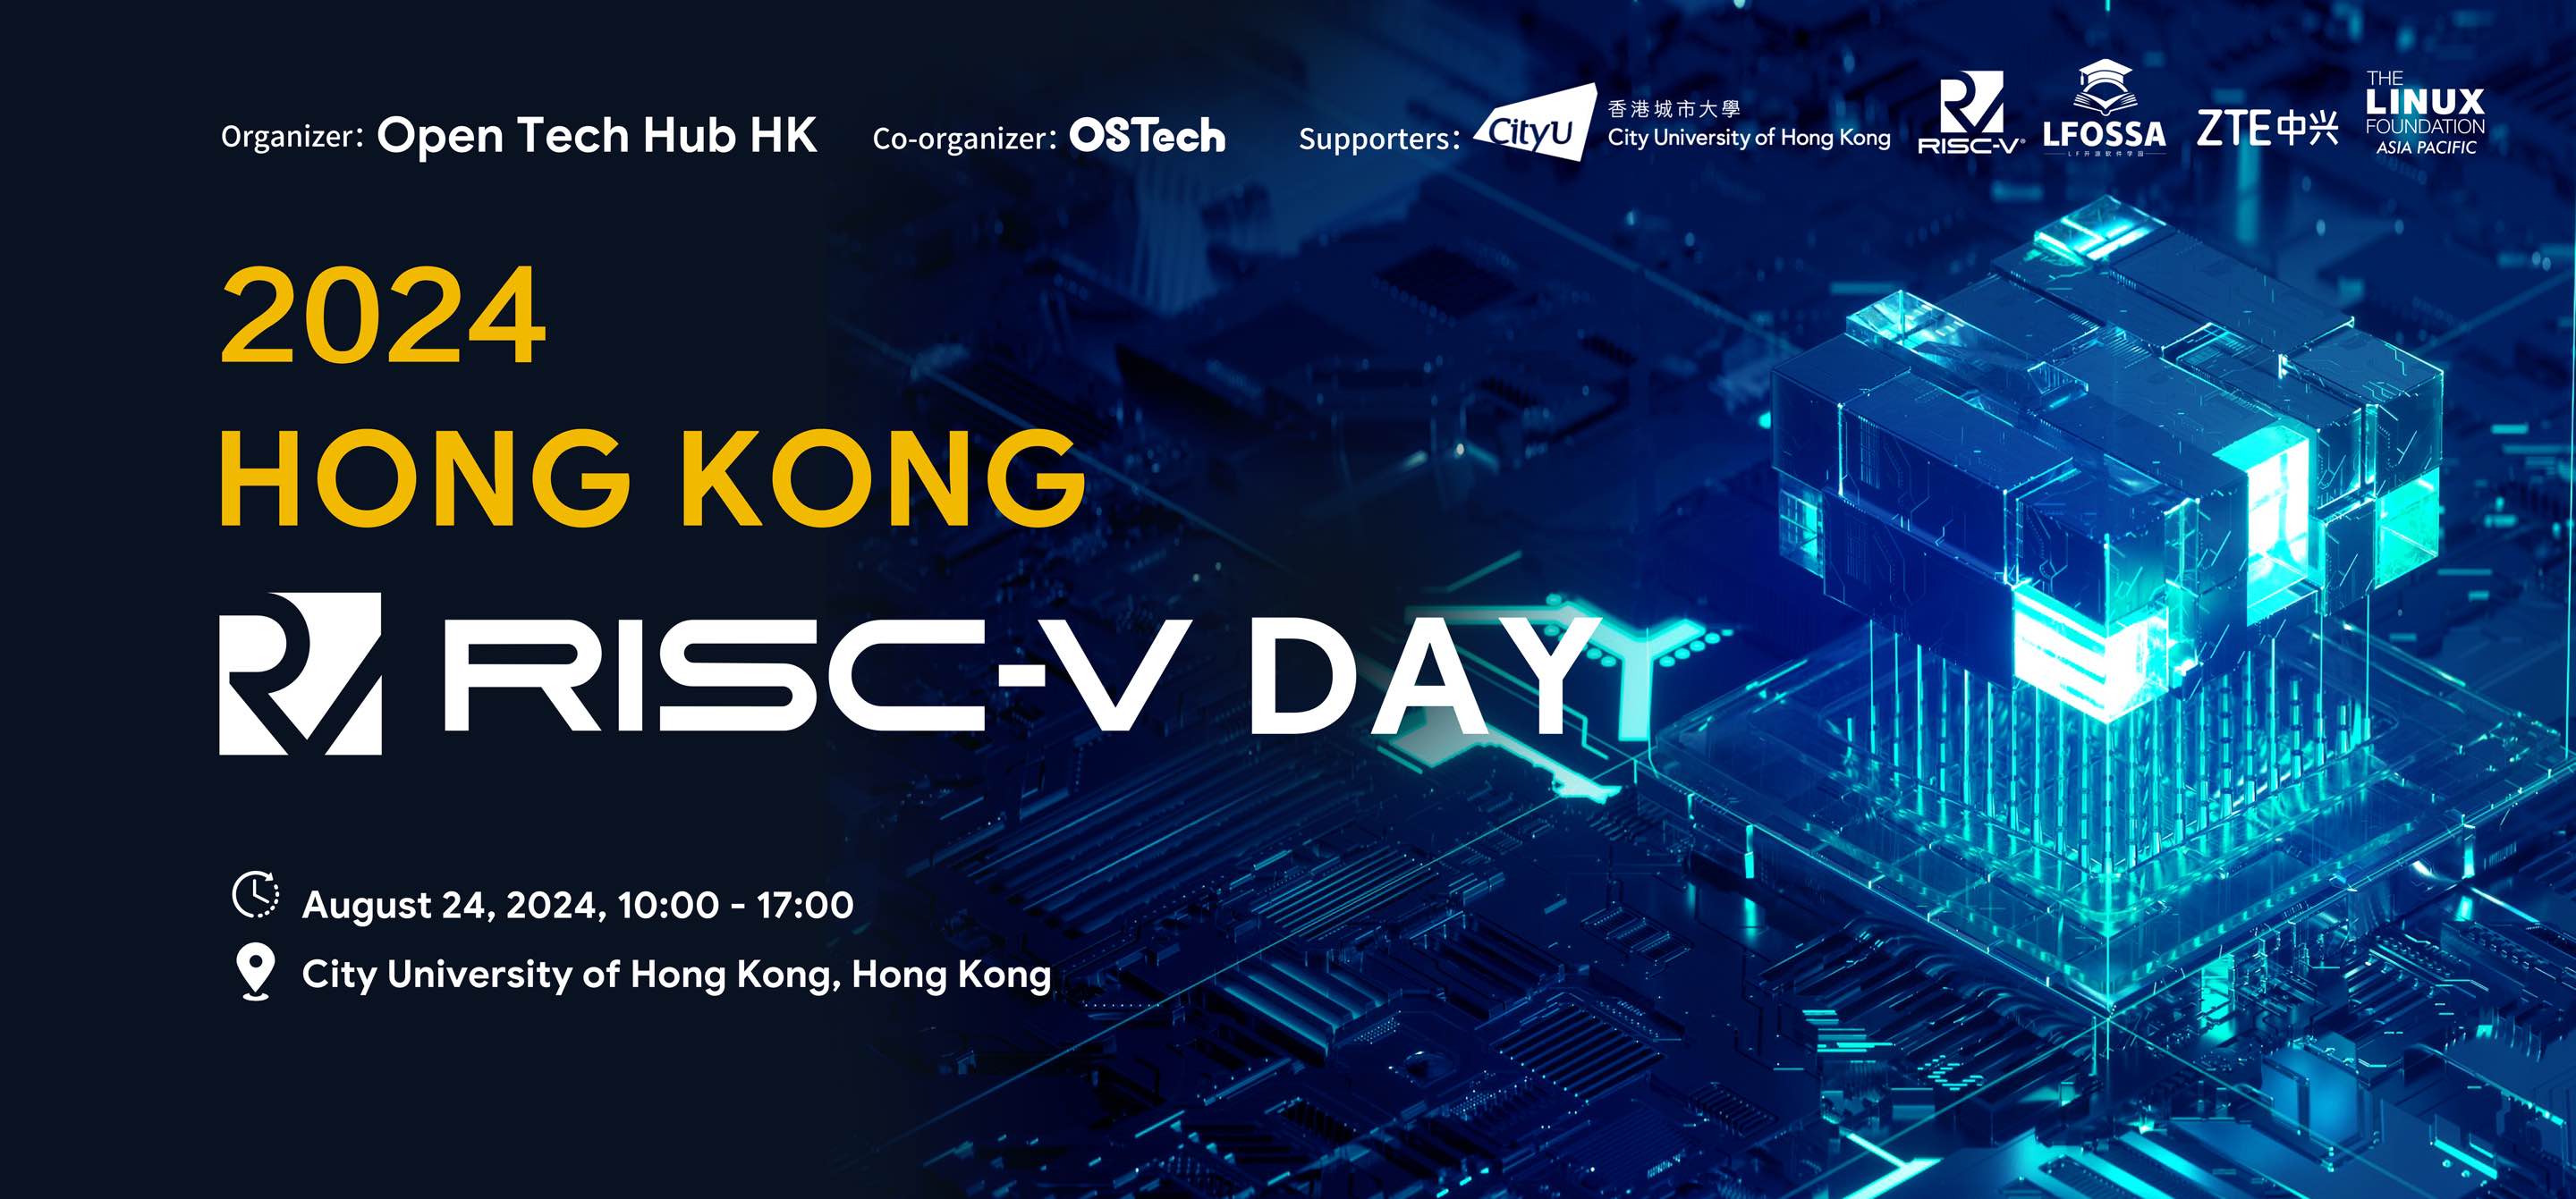 2024 Hong Kong RISC-V Day 来了！合作招募、议题征集火热进行中